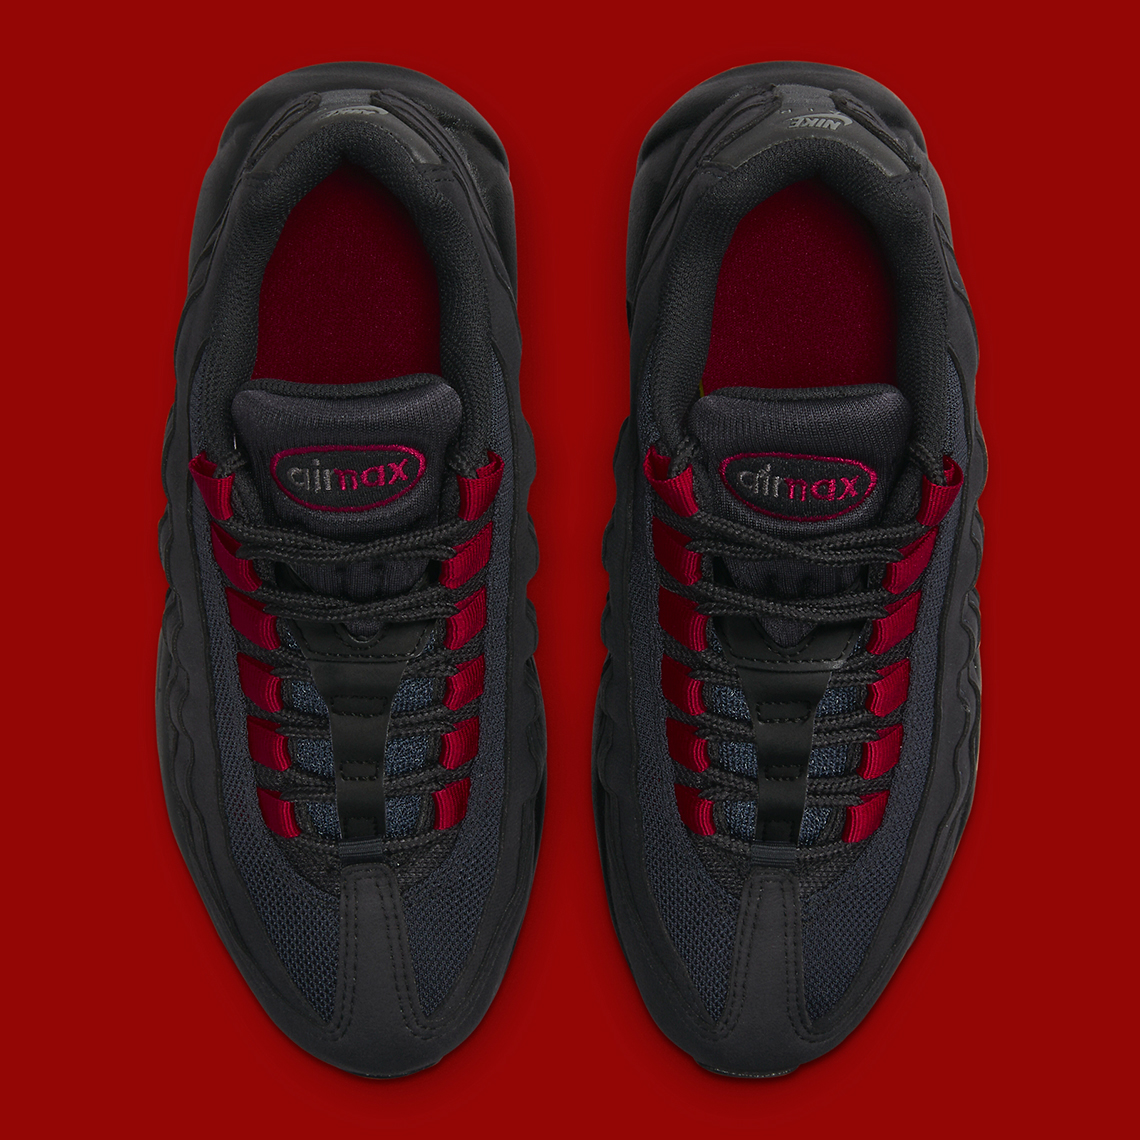 Nike Air Max 95 Gs Black Red Fq2430 001 7